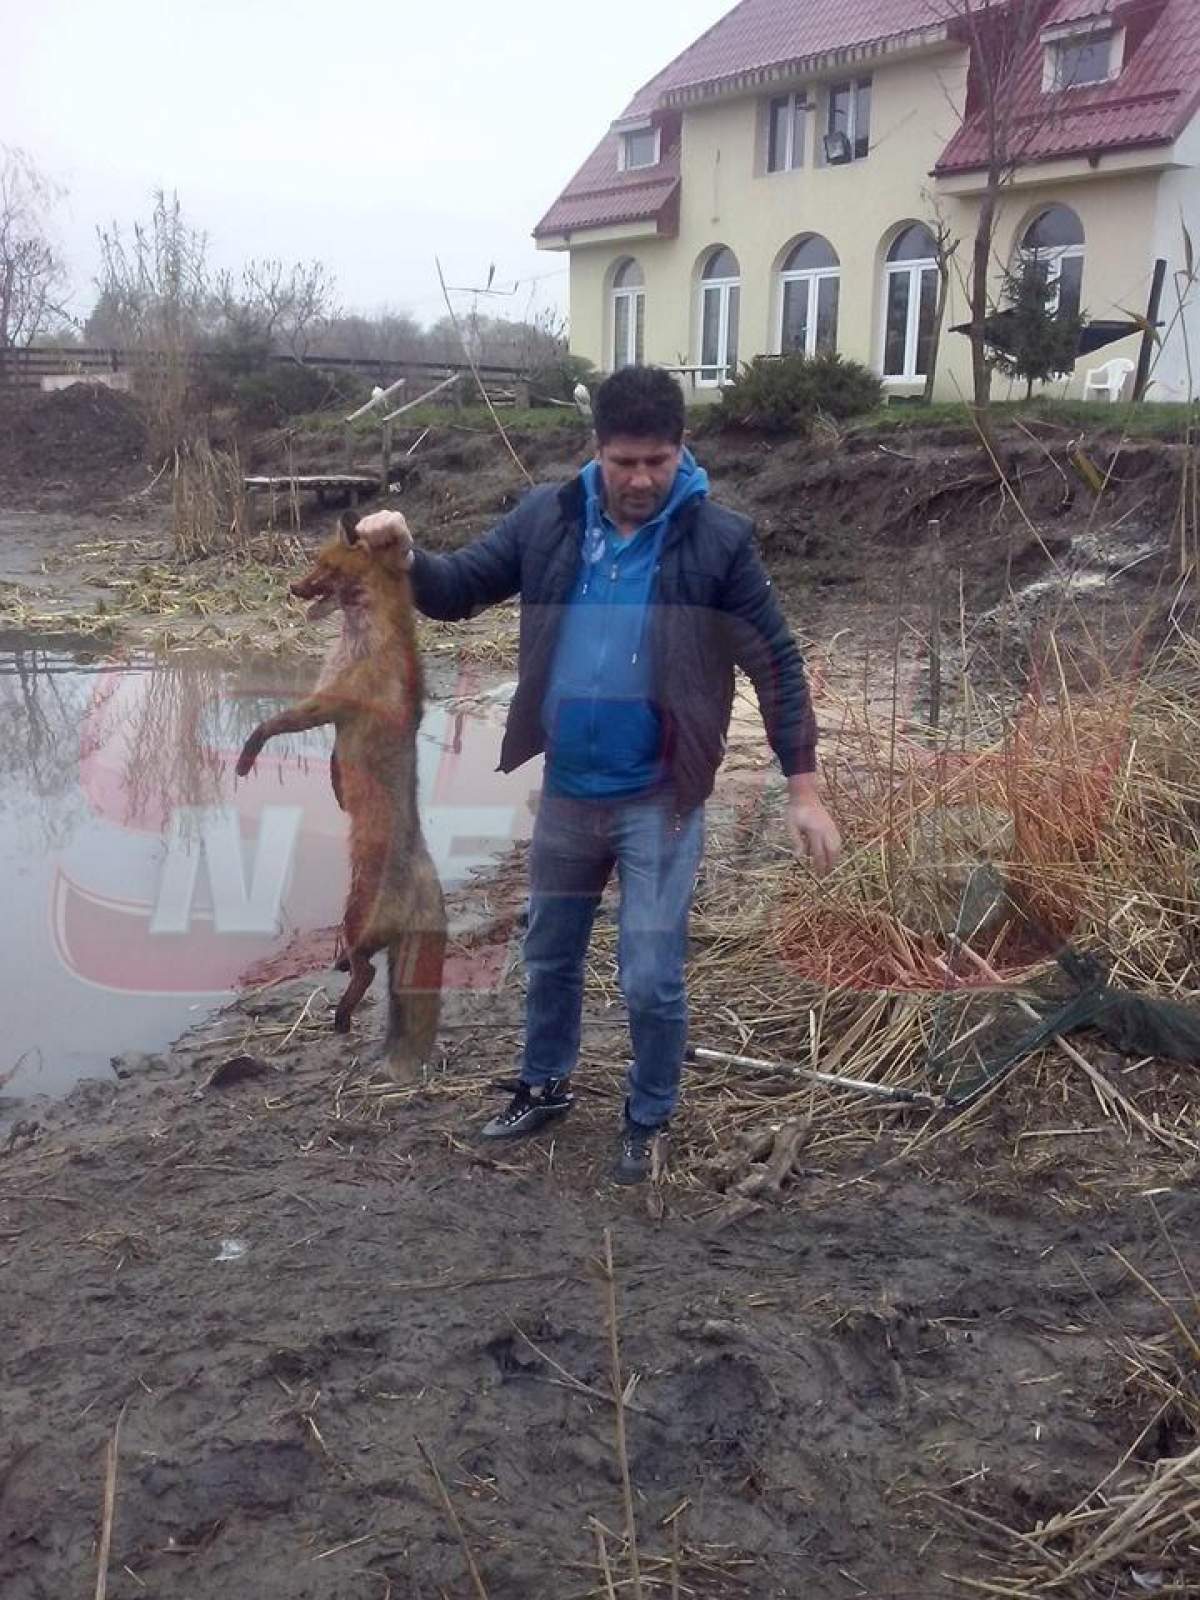 EXCLUSIV Ogică, suspect de turbare! A ajuns în stare critică, la spital, după ce a omorât o vulpe!